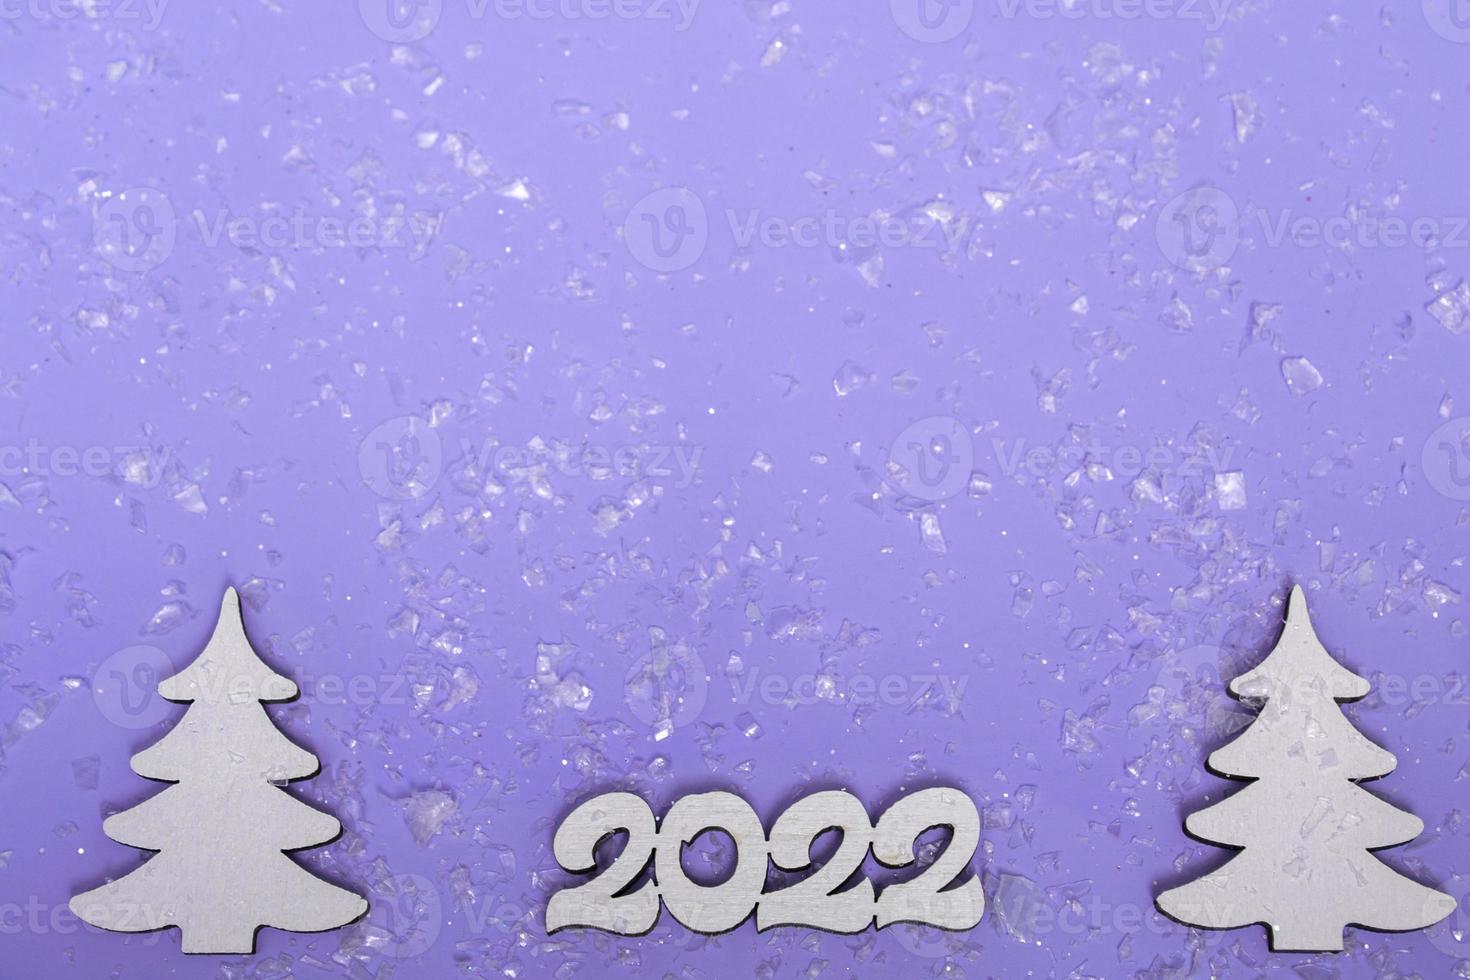 vrolijk kerstfeest en een gelukkig nieuwjaar. feestelijke poster met een kerstboom, sleeën op een paarse achtergrond met verlichting. nieuwjaar 2022 kopieerruimte close-up foto